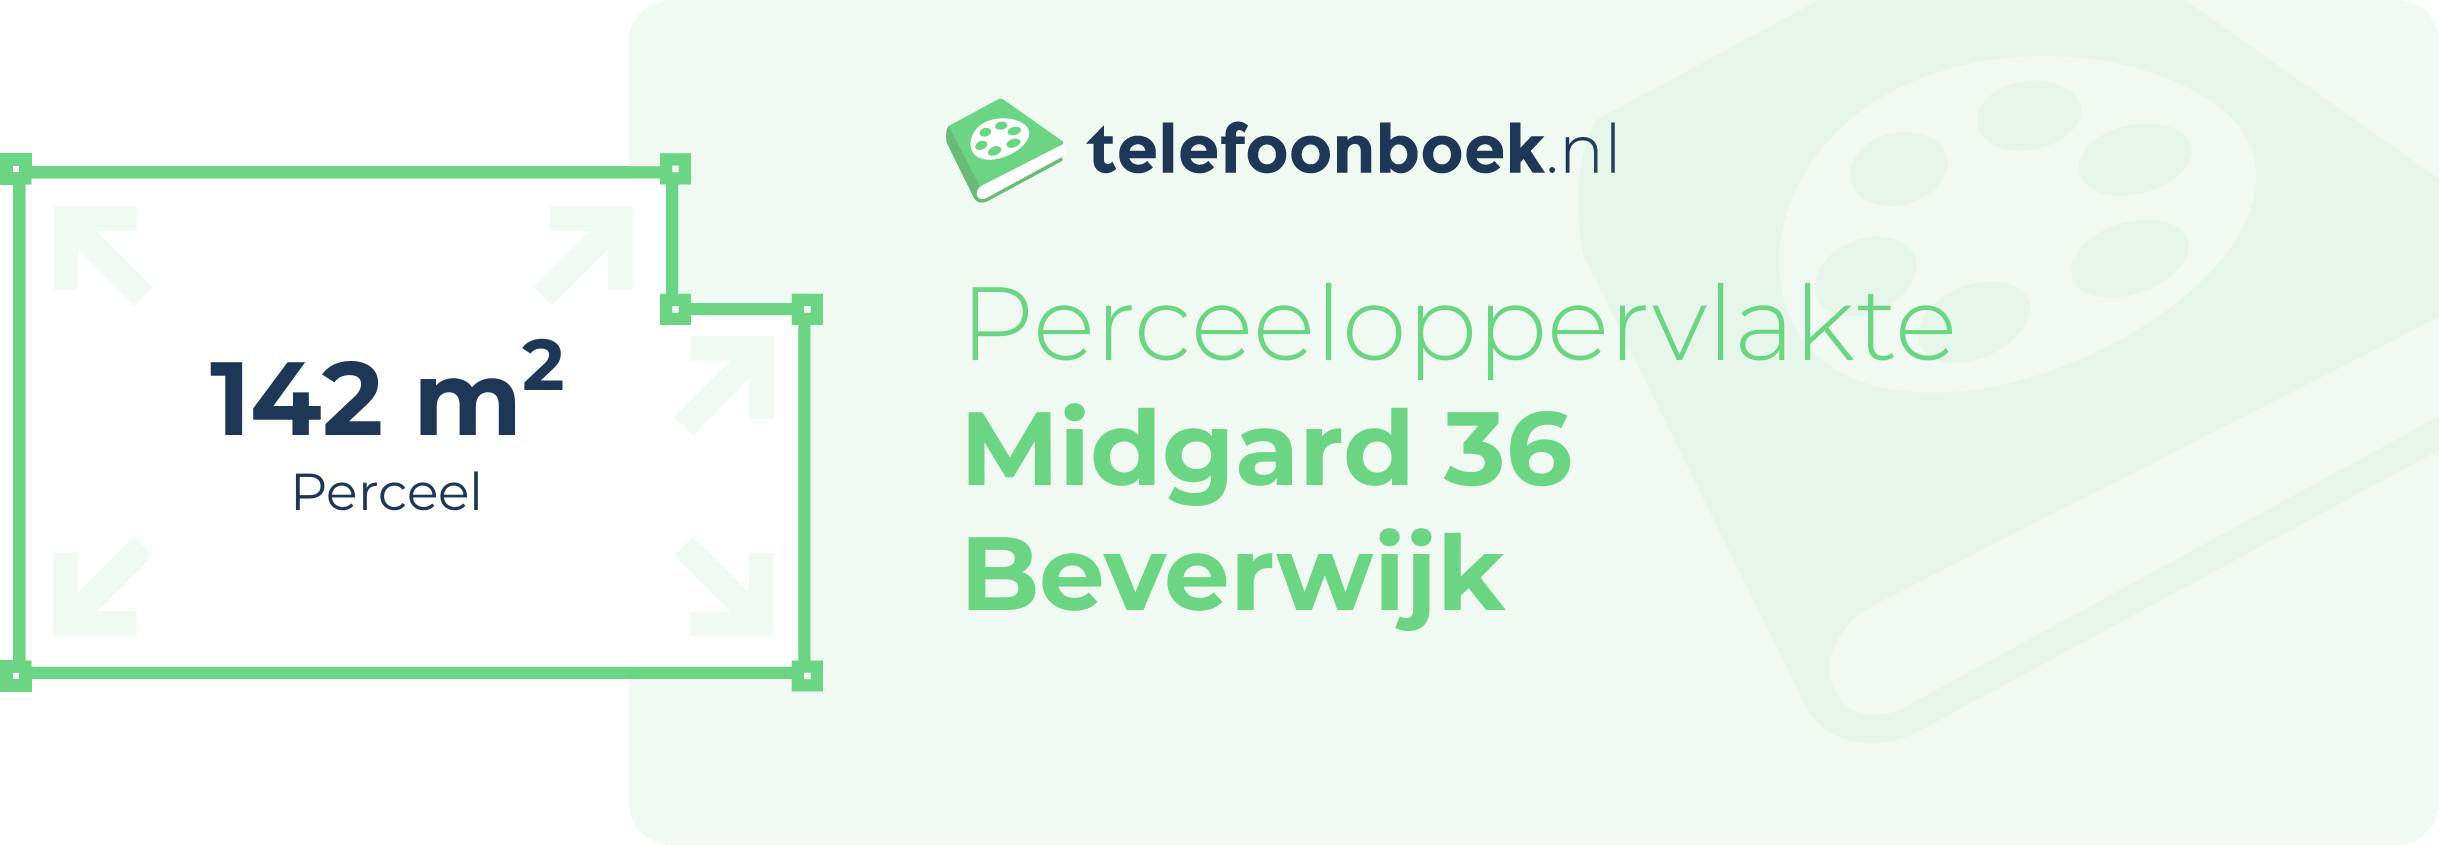 Perceeloppervlakte Midgard 36 Beverwijk